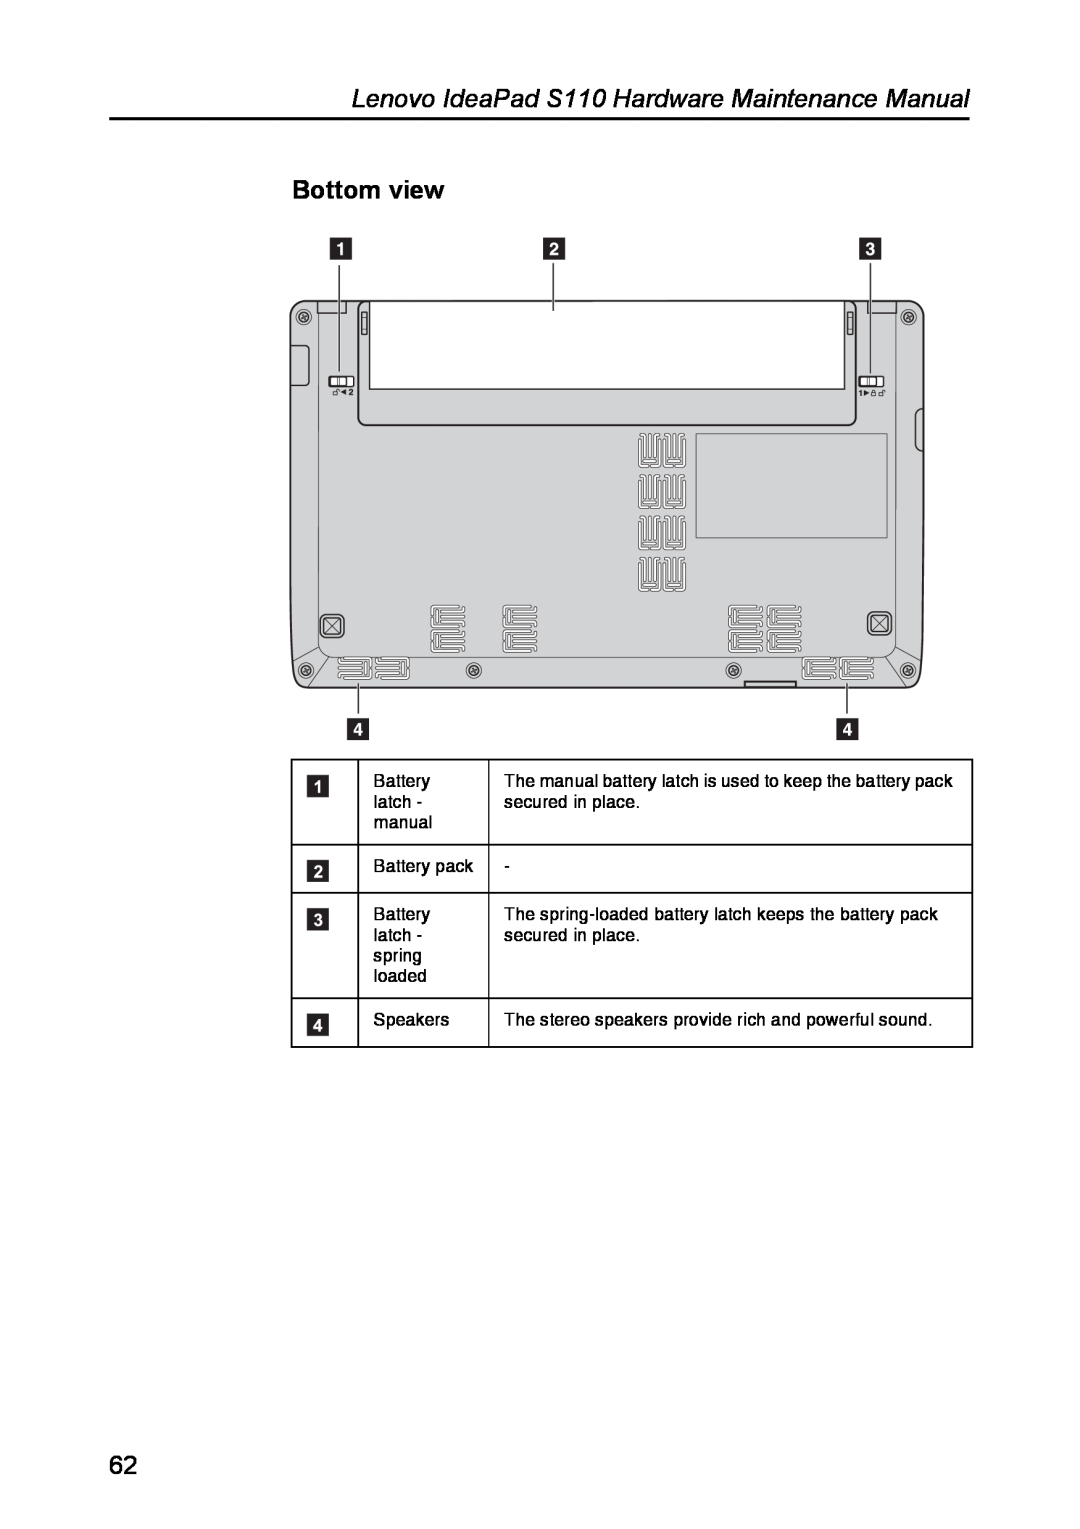 Lenovo manual Bottom view, Lenovo IdeaPad S110 Hardware Maintenance Manual 